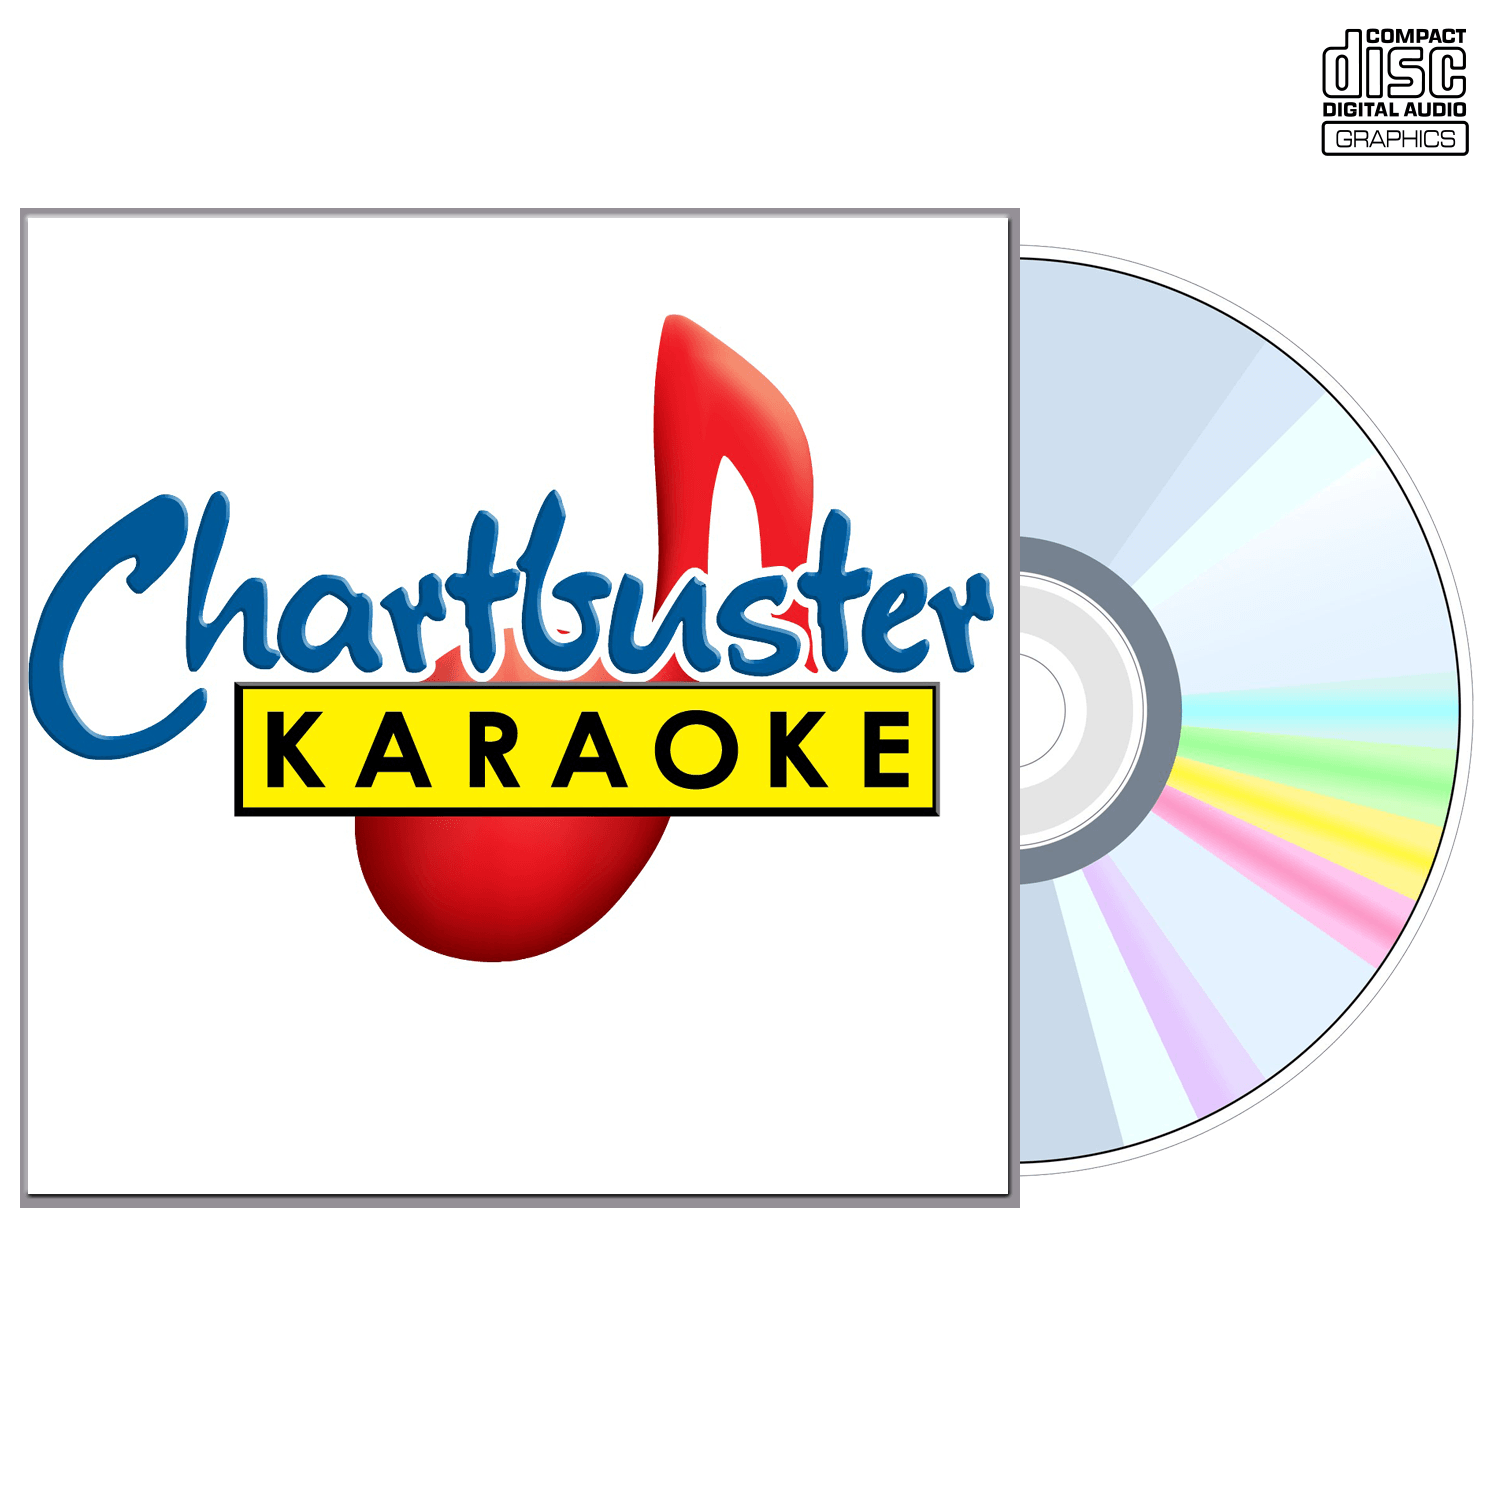 Best Of Brad Paisley - CD+G - Chartbuster Karaoke - Karaoke Home Entertainment